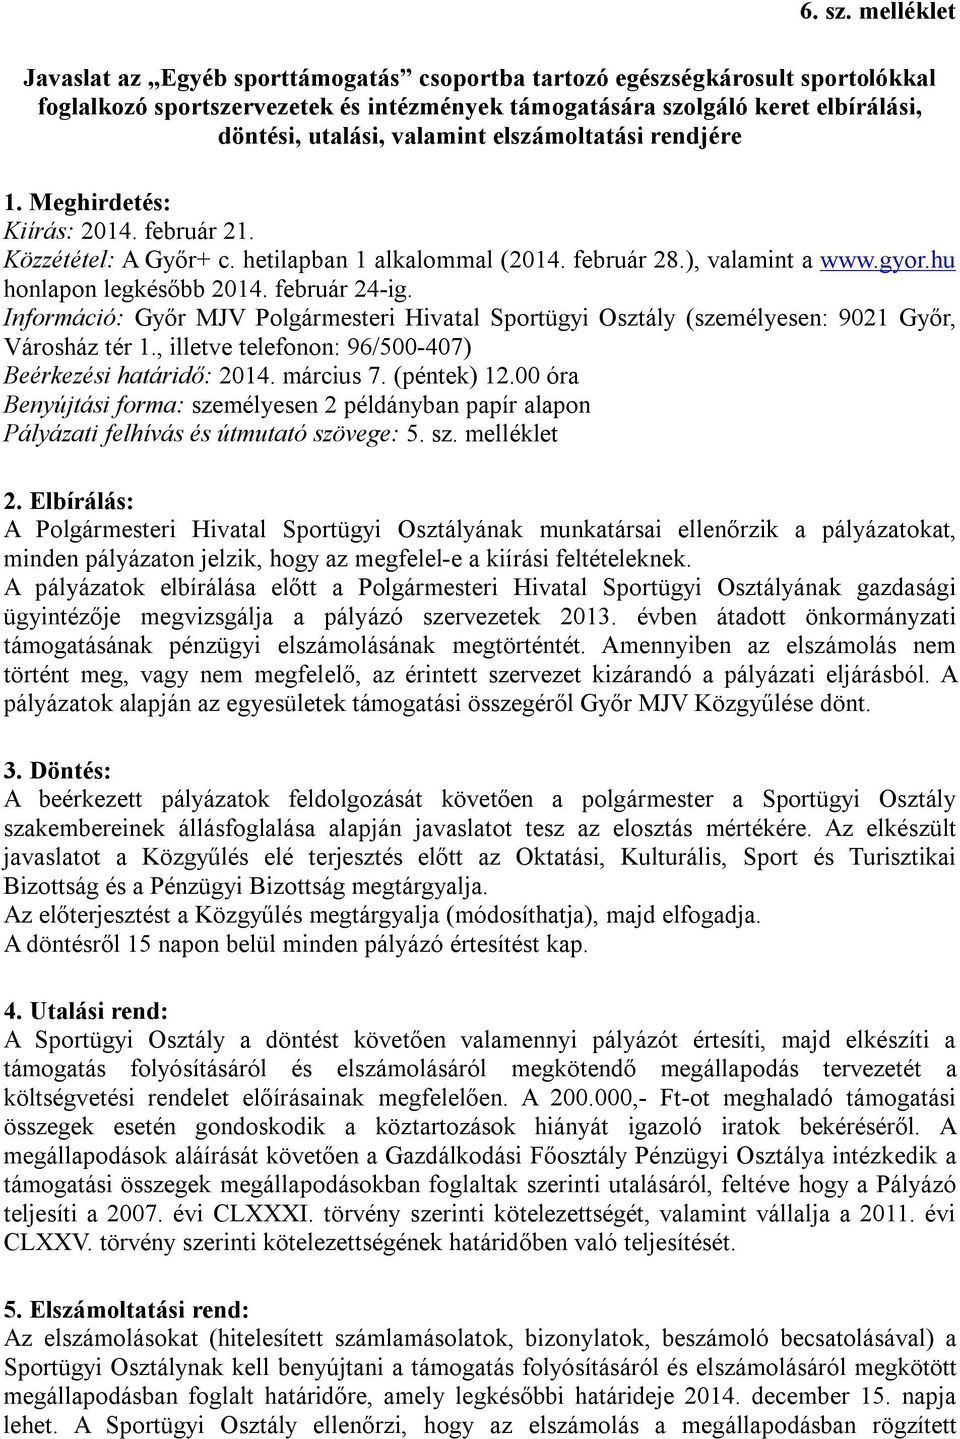 valamint elszámoltatási rendjére 1. Meghirdetés: Kiírás: 2014. február 21. Közzététel: A Győr+ c. hetilapban 1 alkalommal (2014. február 28.), valamint a www.gyor.hu honlapon legkésőbb 2014.